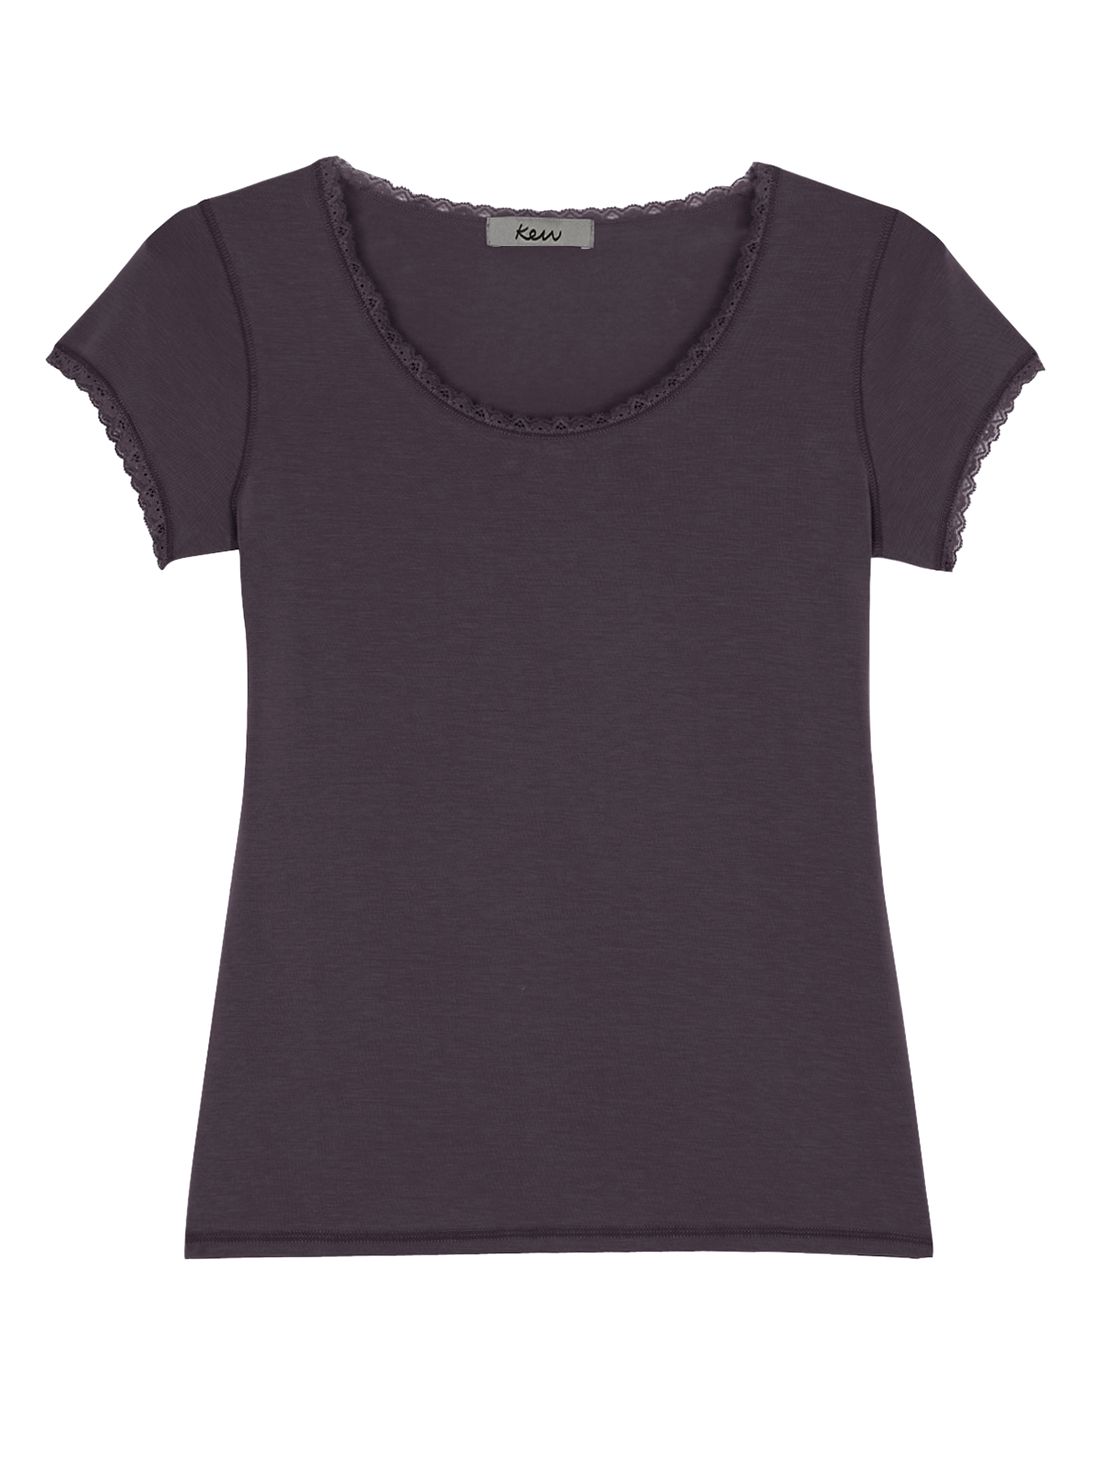 Kew Lace Trim Cap Sleeve T-Shirt, Mauve, M